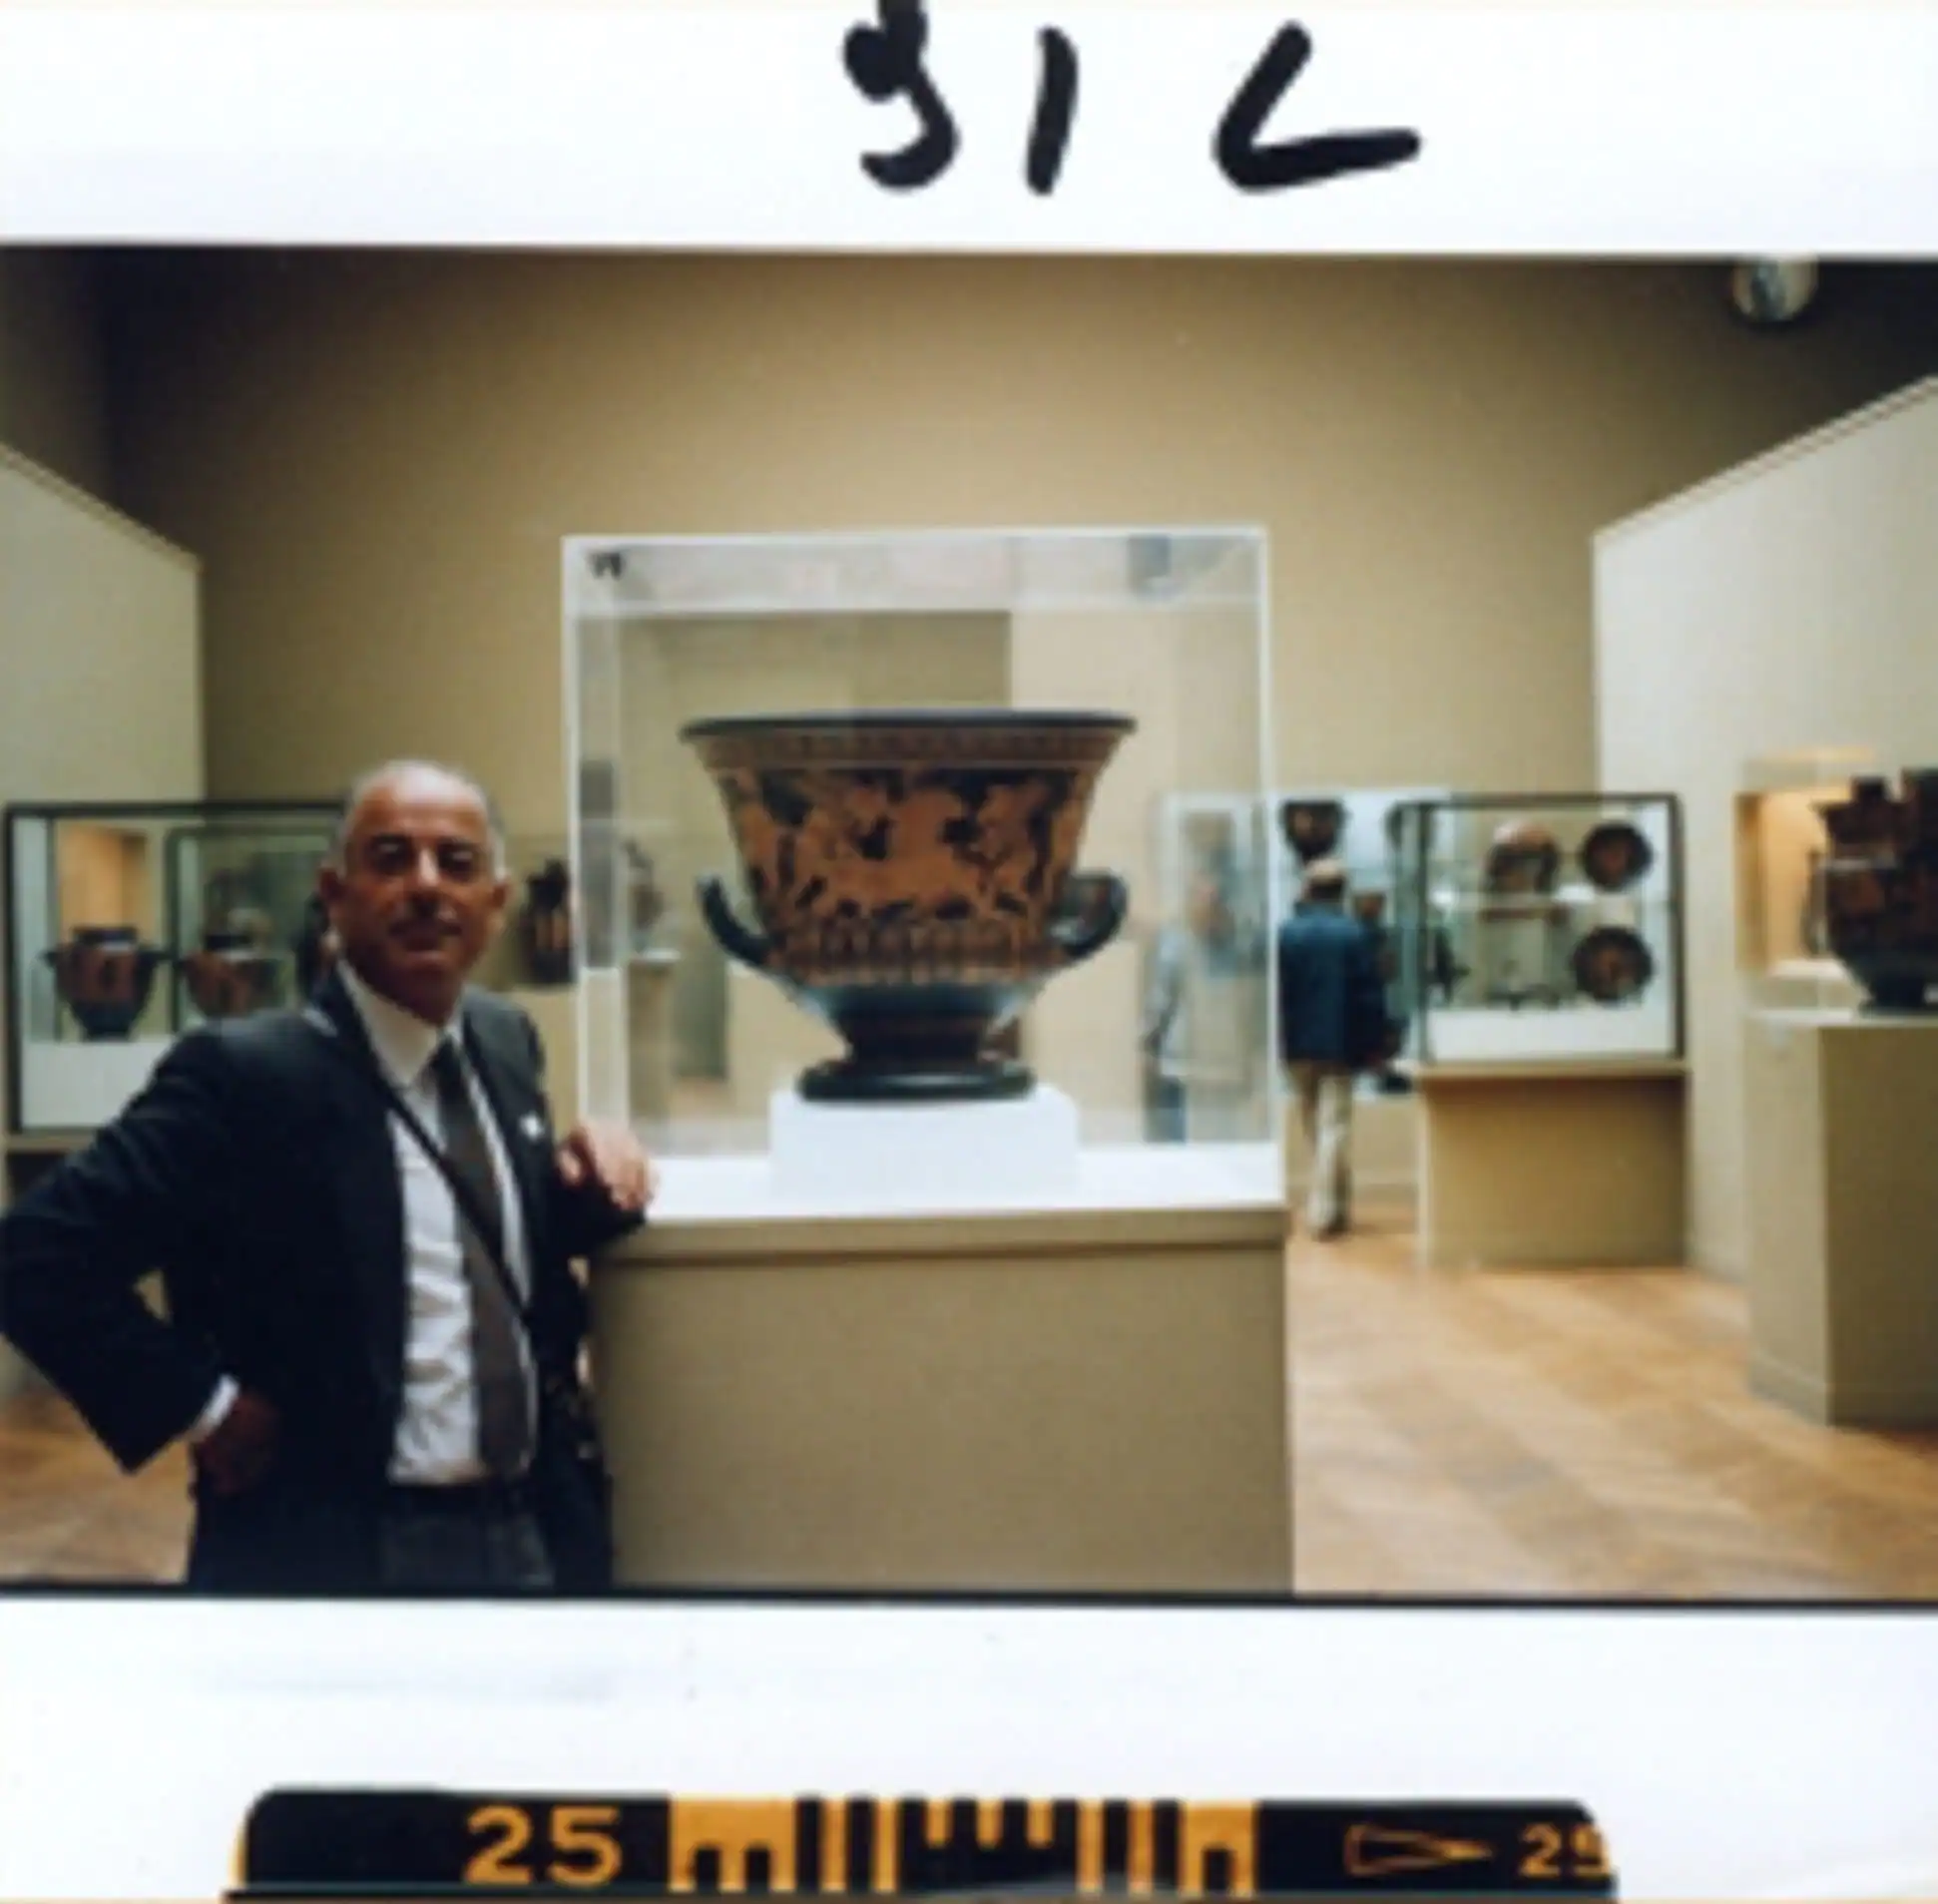 Foto trofeo de Medici, en el Metropolitan de Nueva York, junto al Vaso de Eufronios, que el museo norteamericano tuvo que devolver